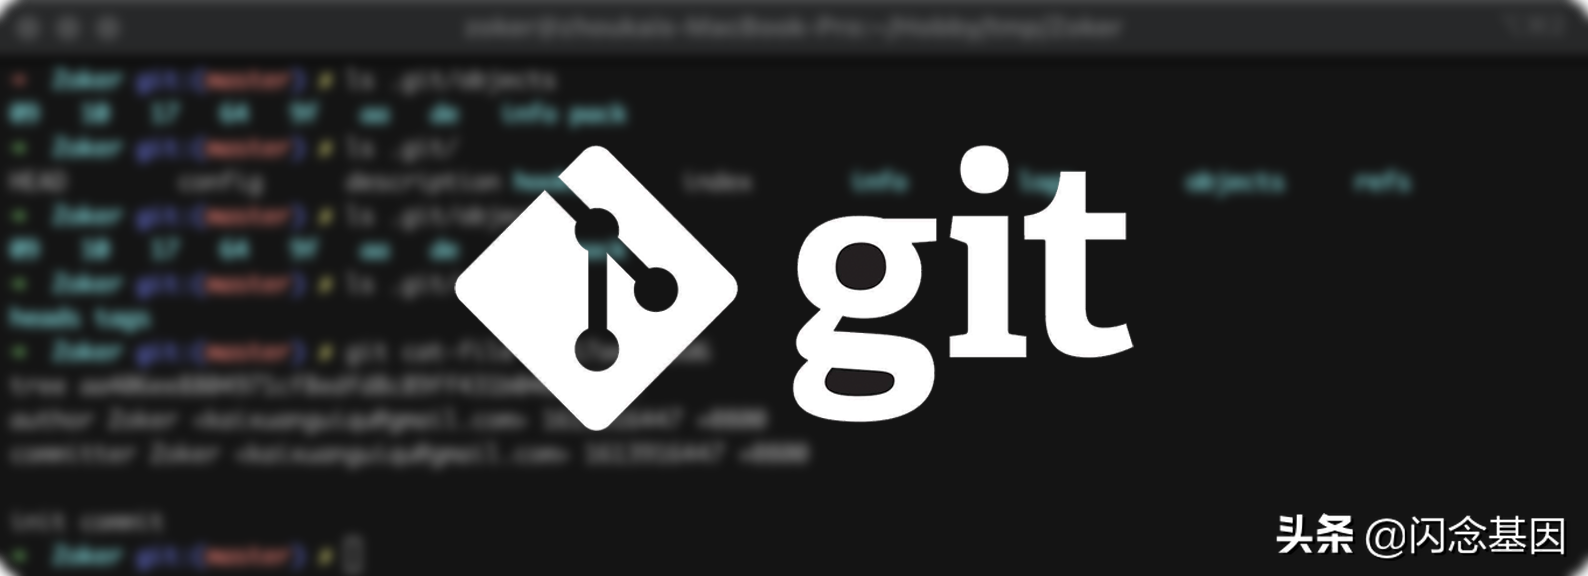 谈谈 Git 存储原理及相关实现